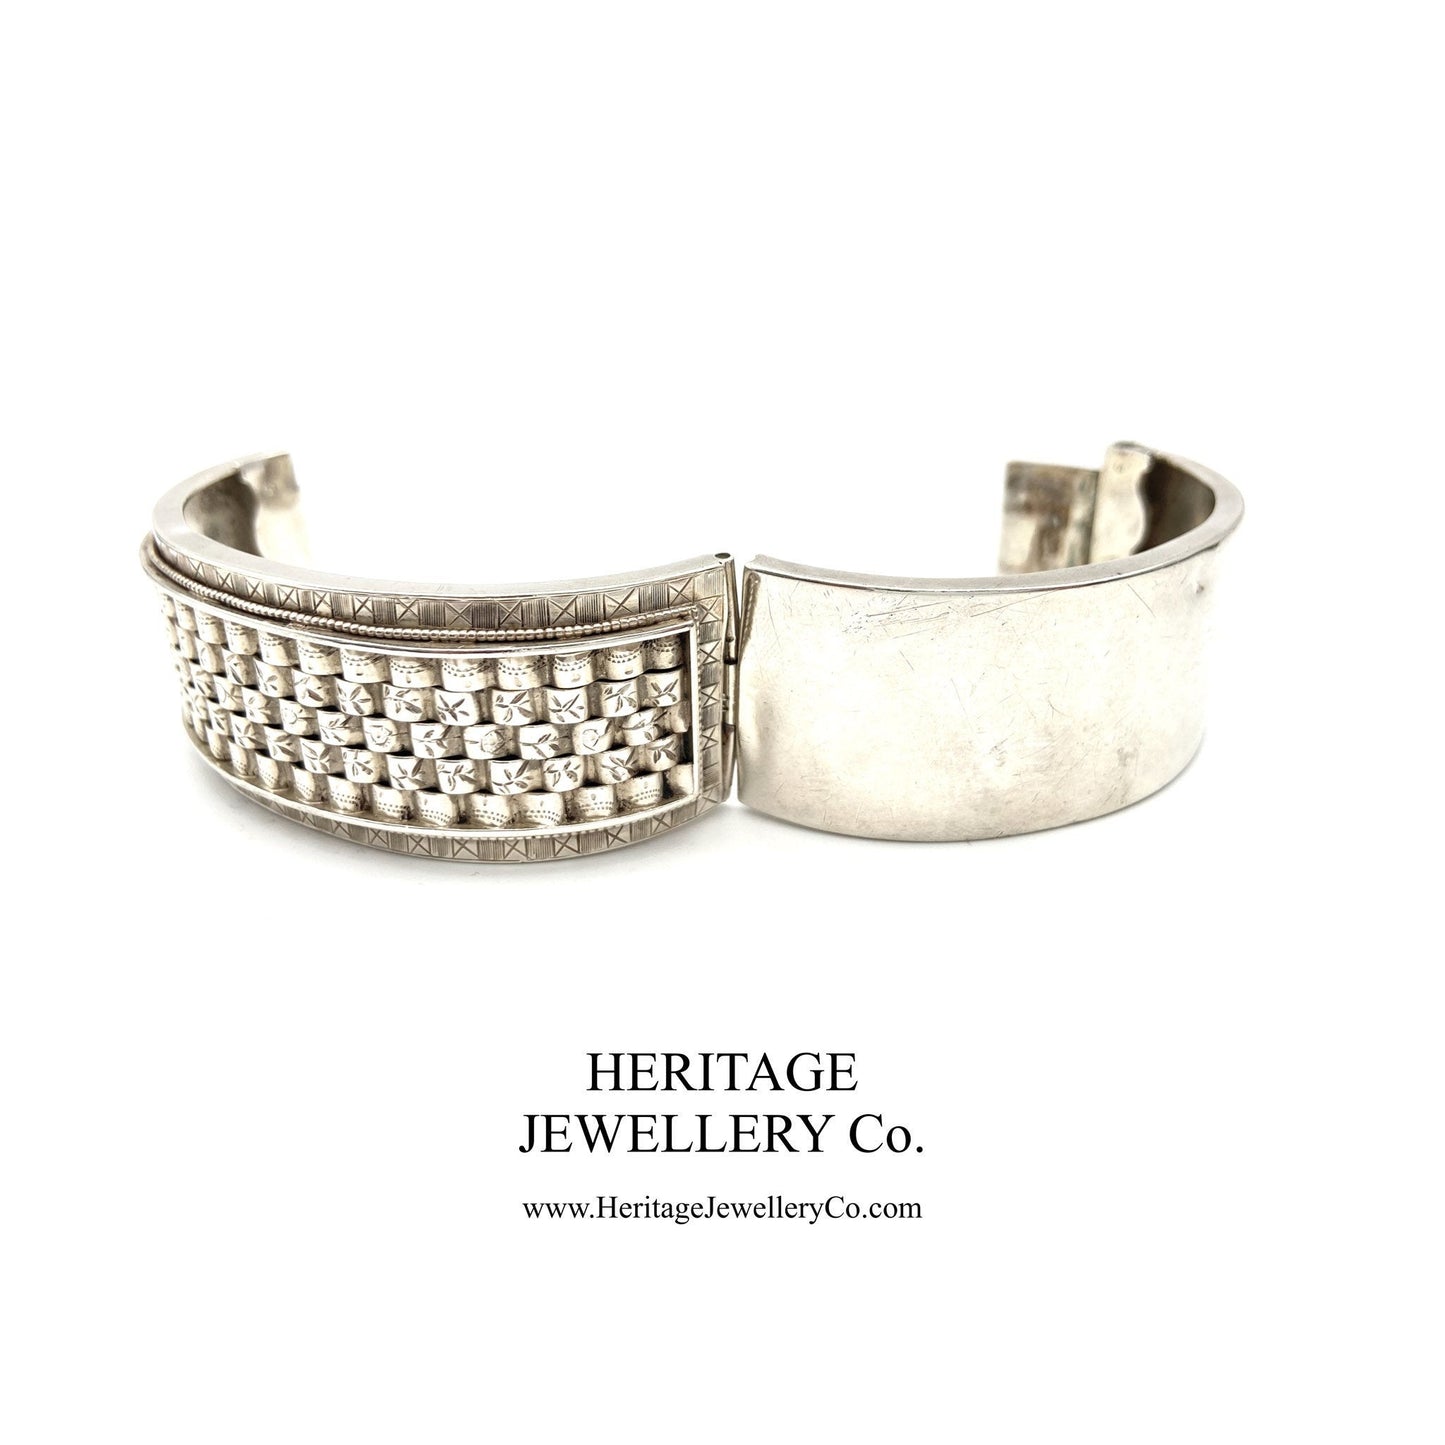 Antique Victorian Silver Bangle Bracelet (c. 1883)